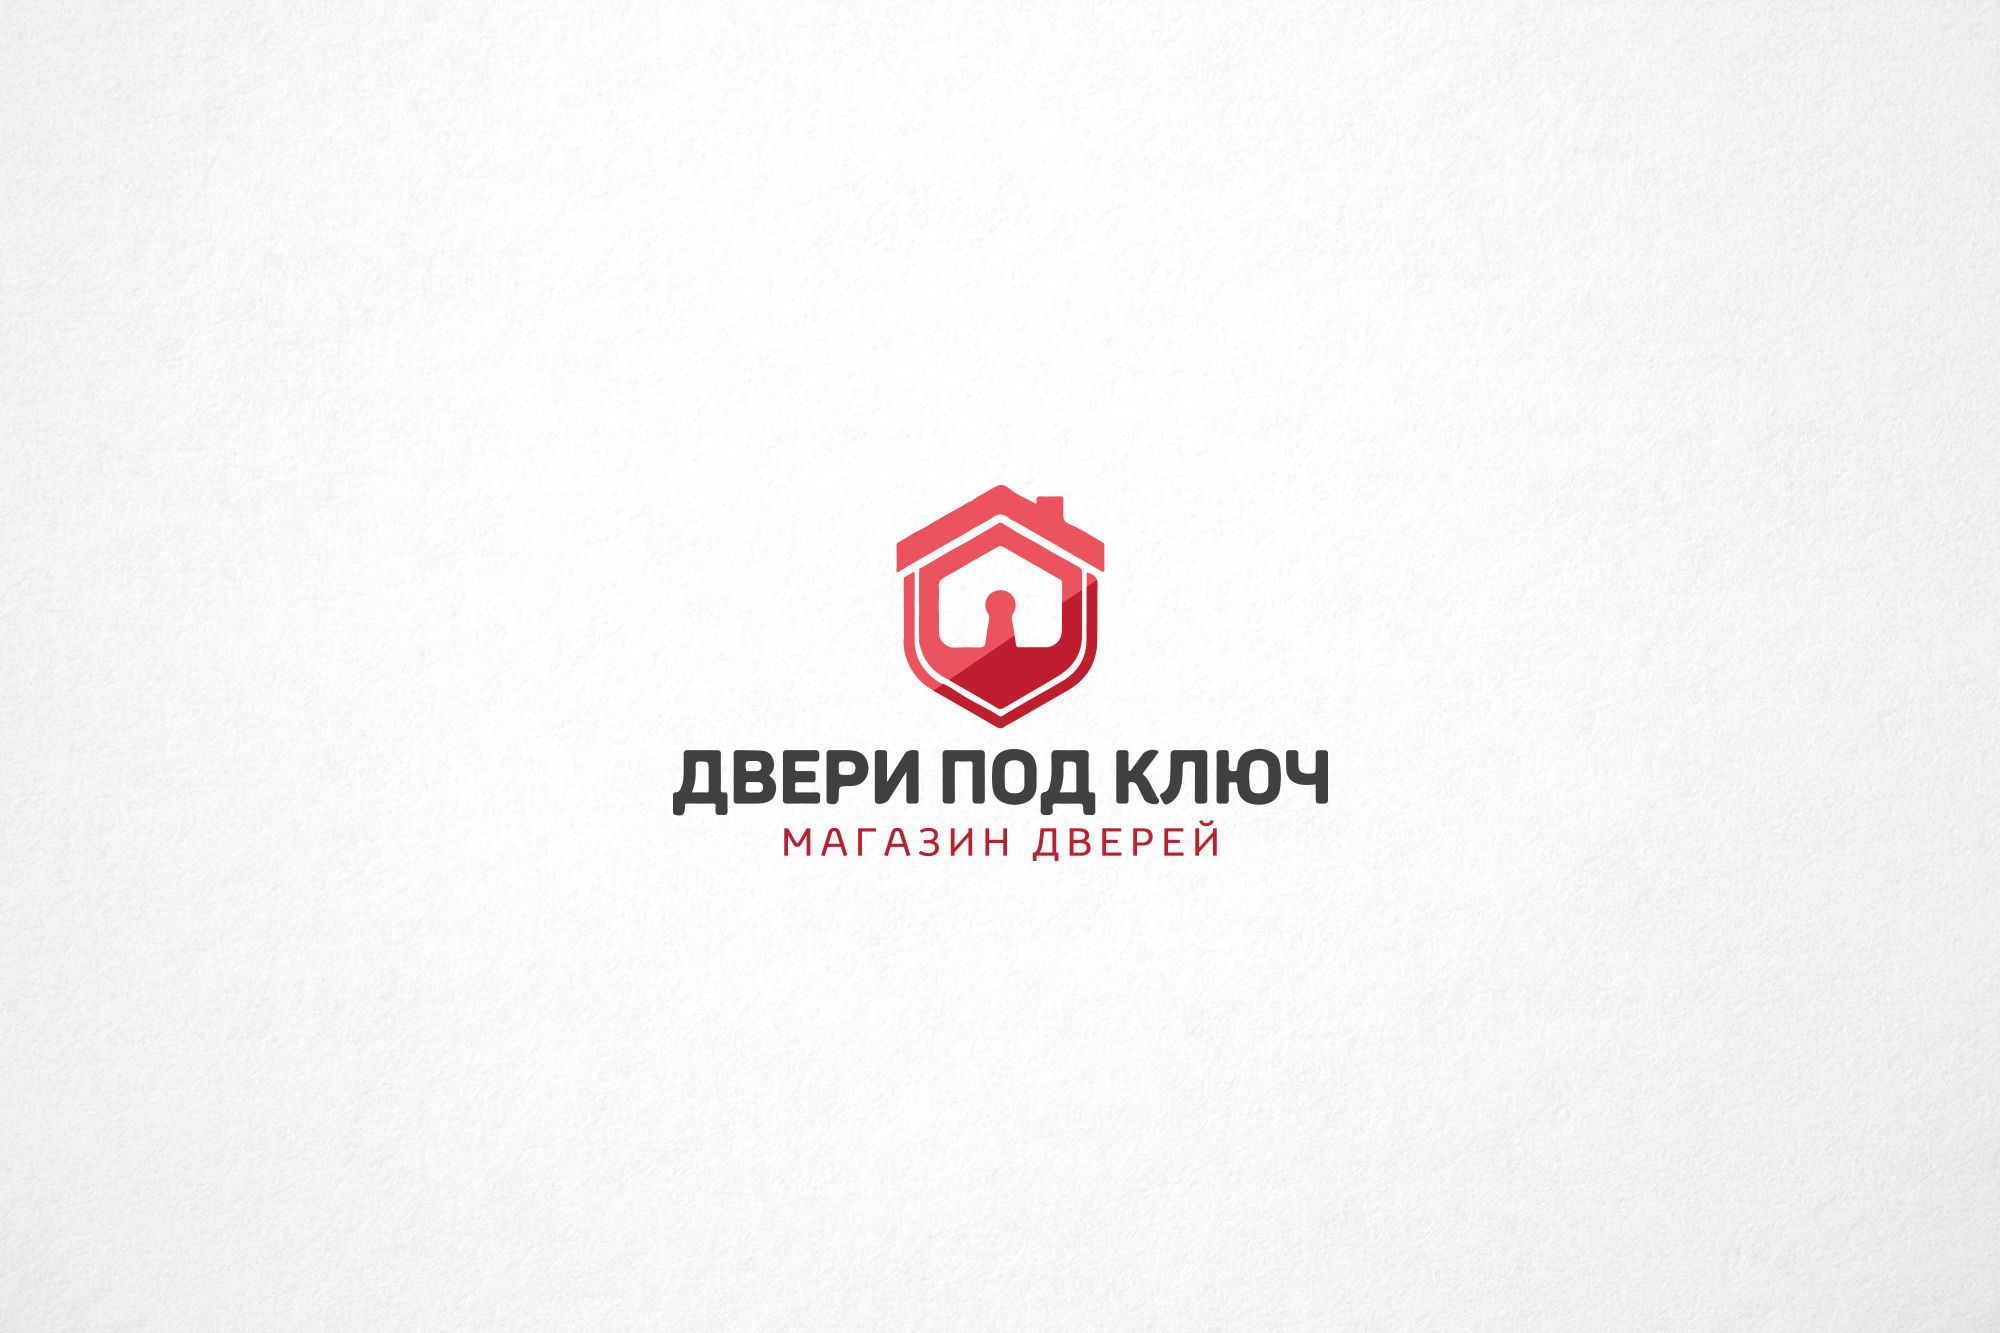 Фирменный стиль и логотип для магазина дверей - дизайнер Da4erry